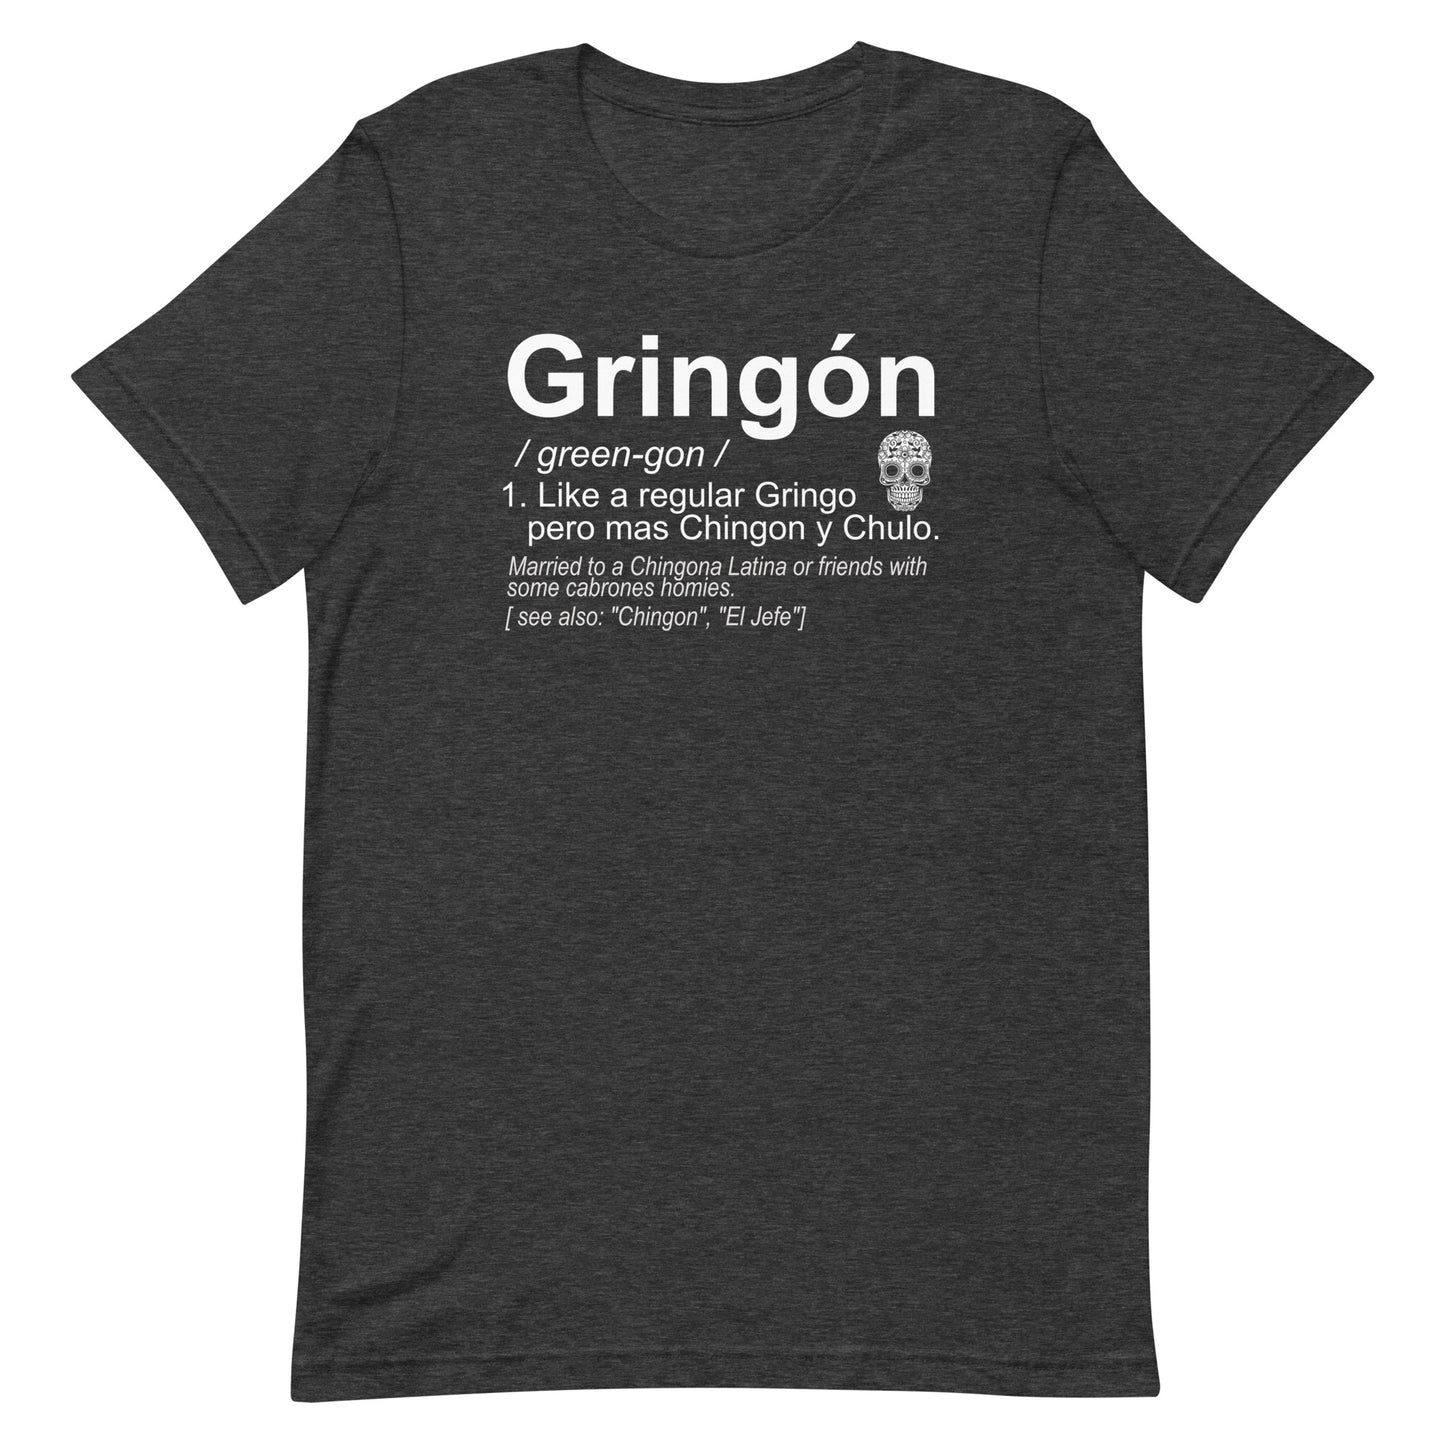 Gringon Chingon T-Shirt Premium Quality